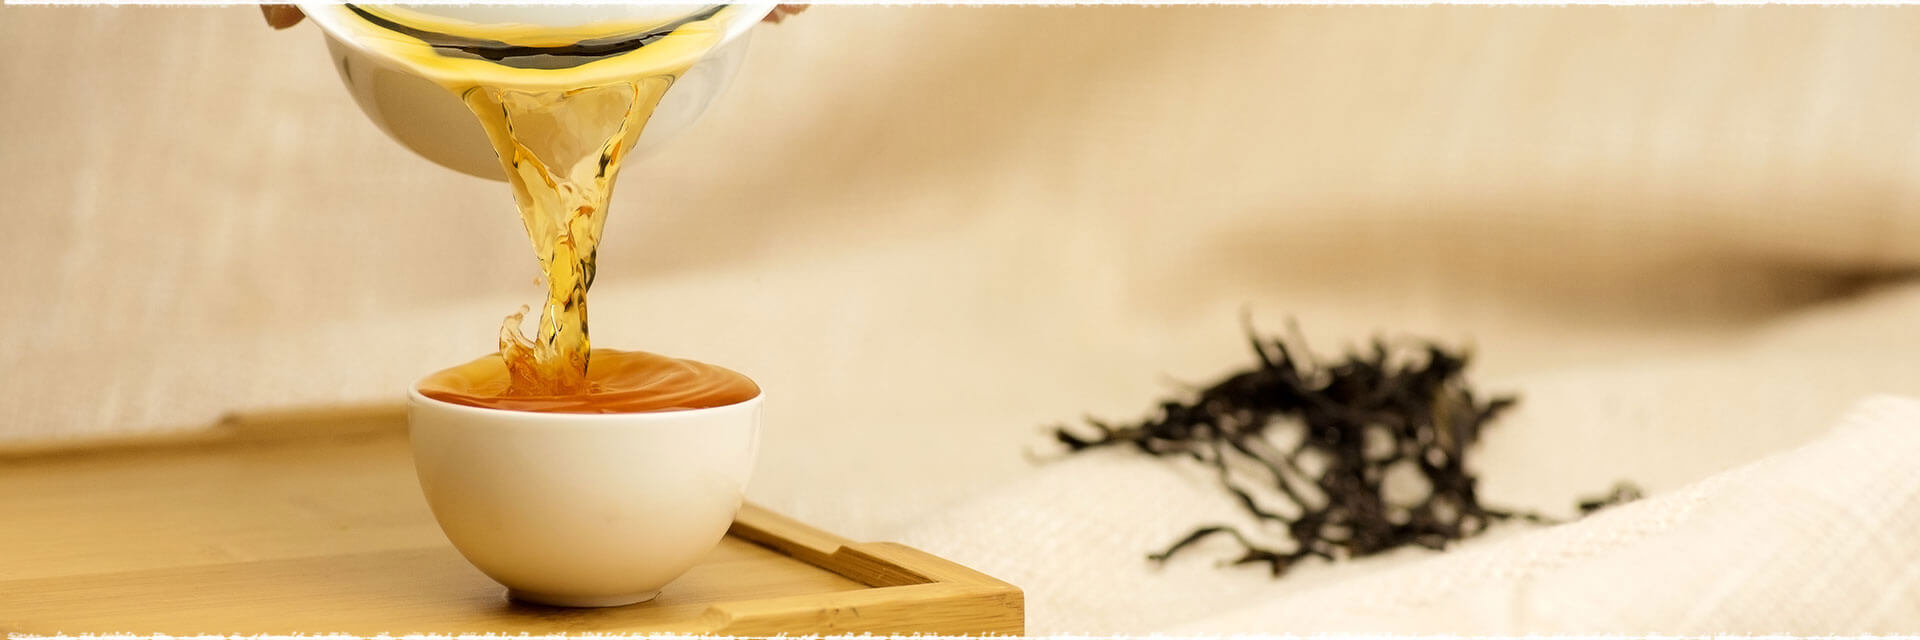 Making Process of Tie Guan Yin Oolong Tea